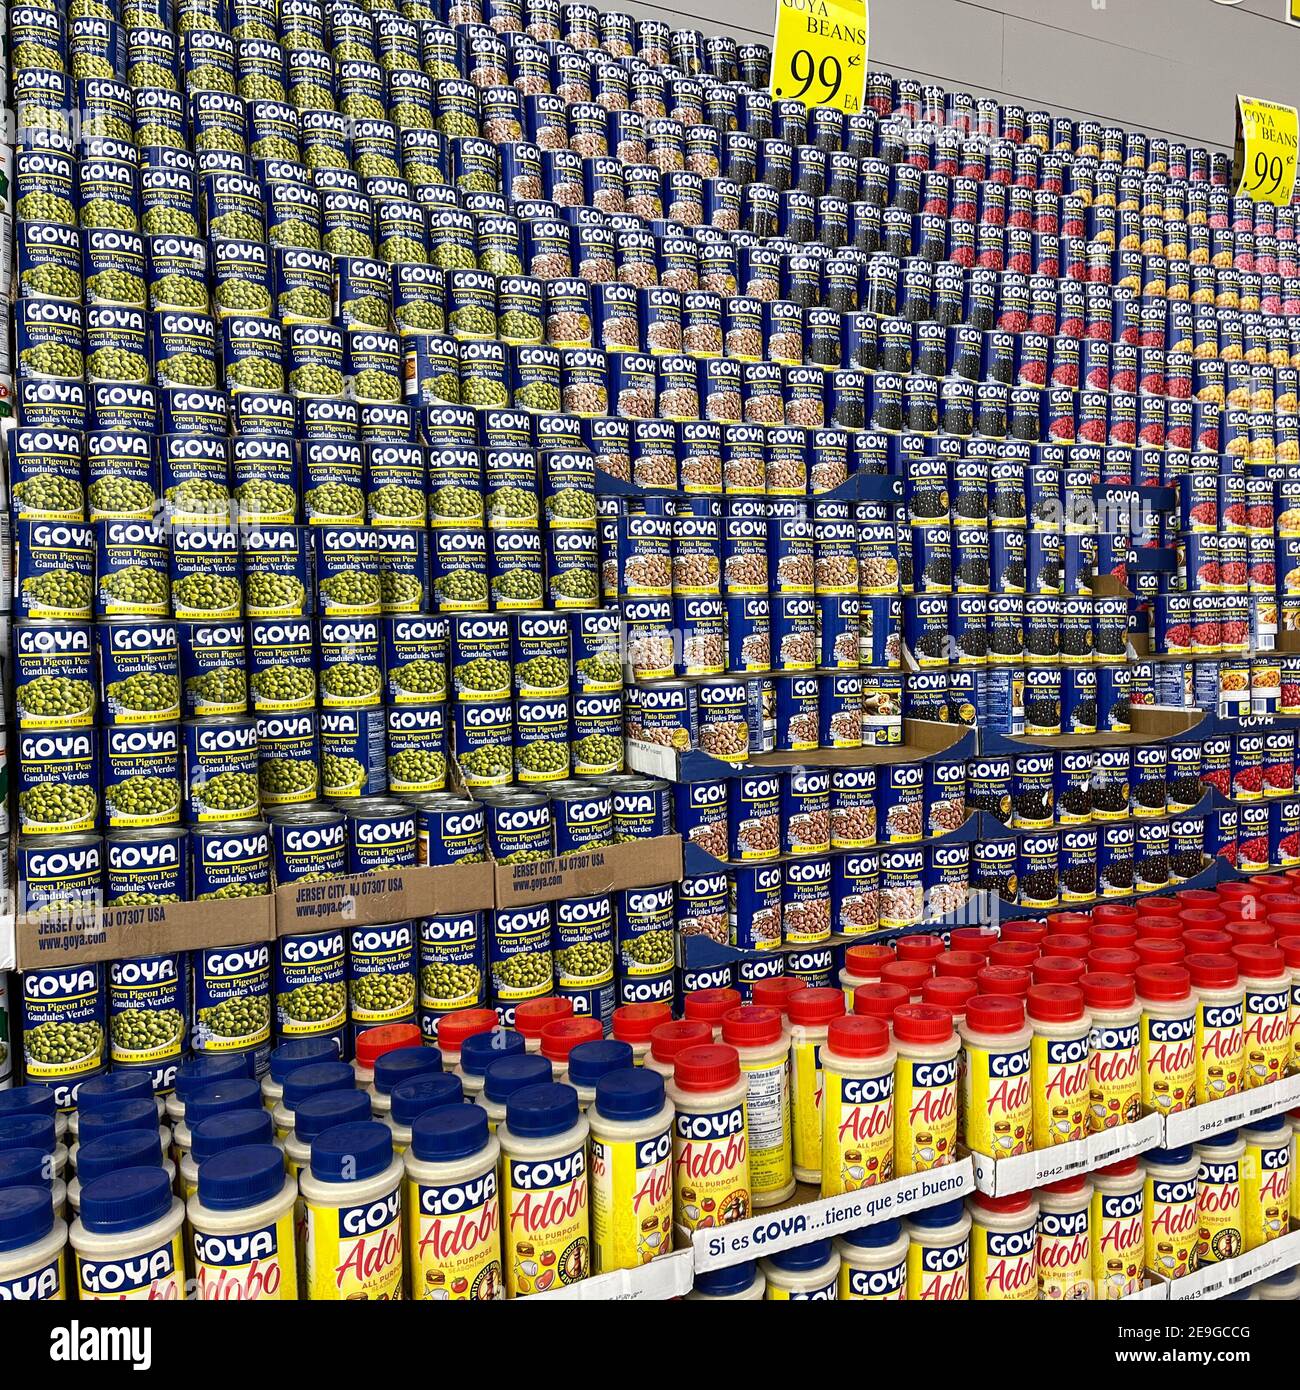 Orlando, FL USA - 18. Januar 2021: Die Goya Dosenerbsen und Bohnen Display in einem Bravo Market Lebensmittelgeschäft in Orlando, Florida. Stockfoto